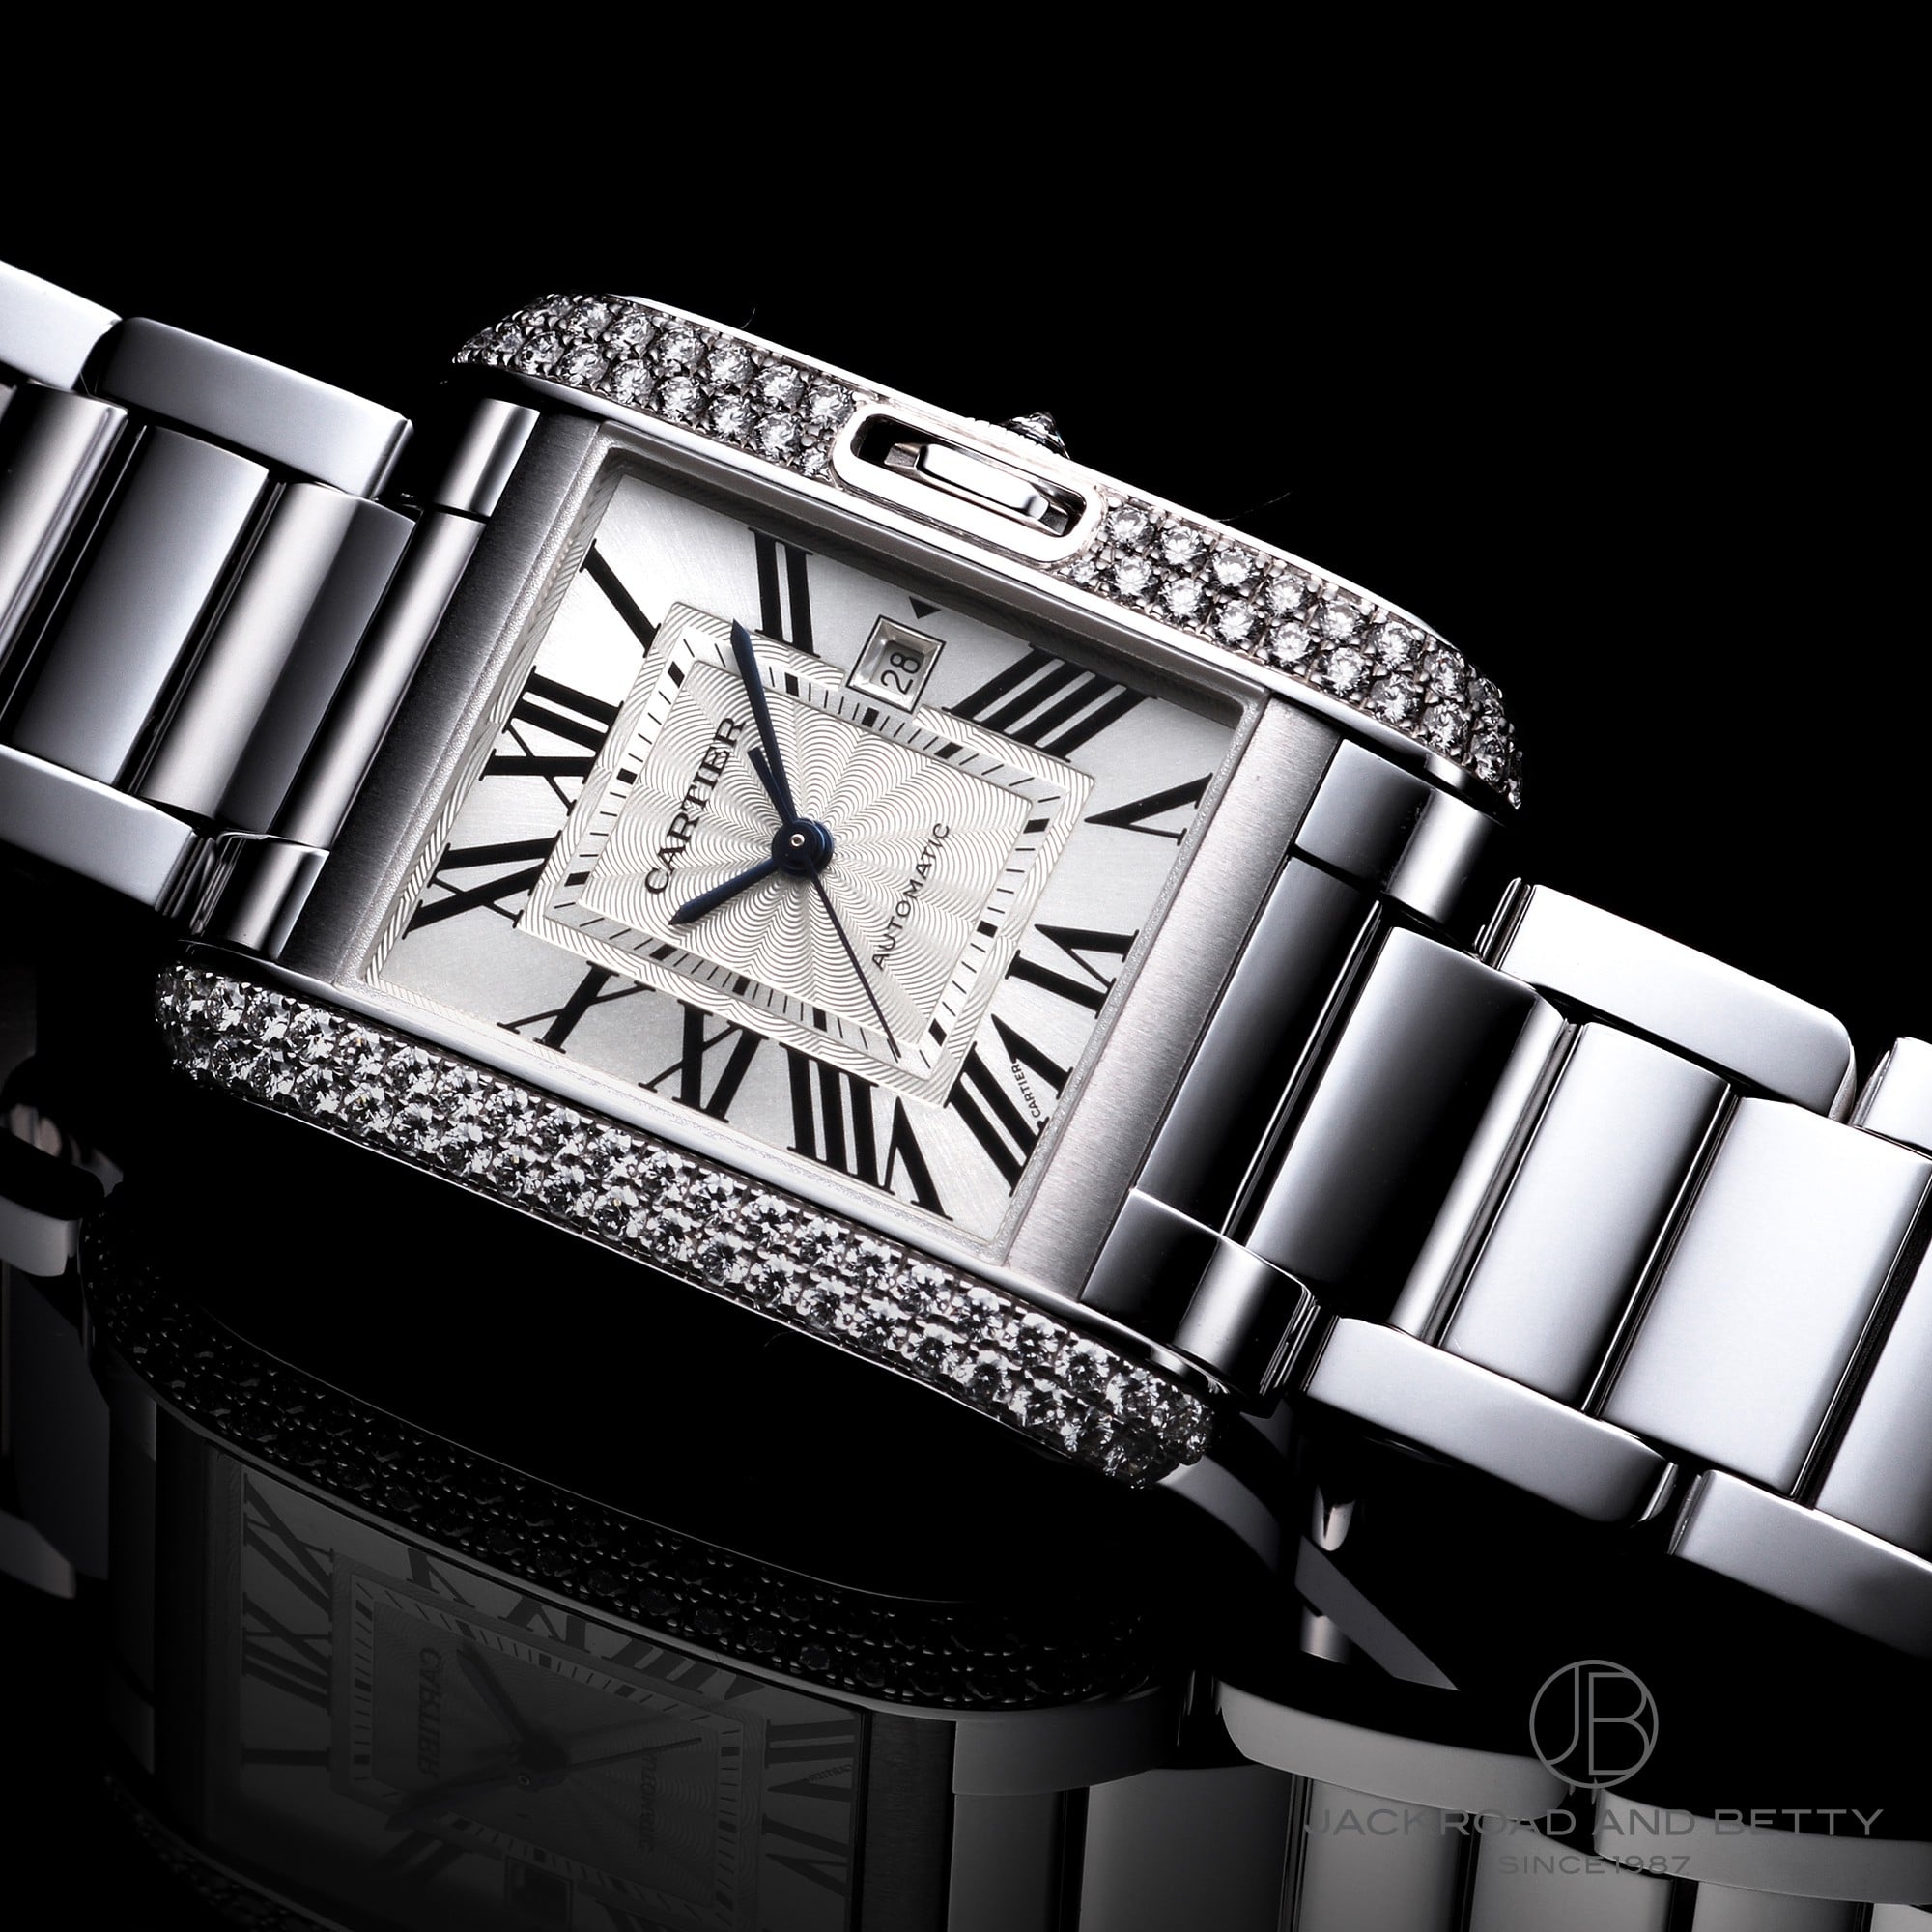 カルティエ Cartier タンクアングレーズ LM 腕時計 メンズ